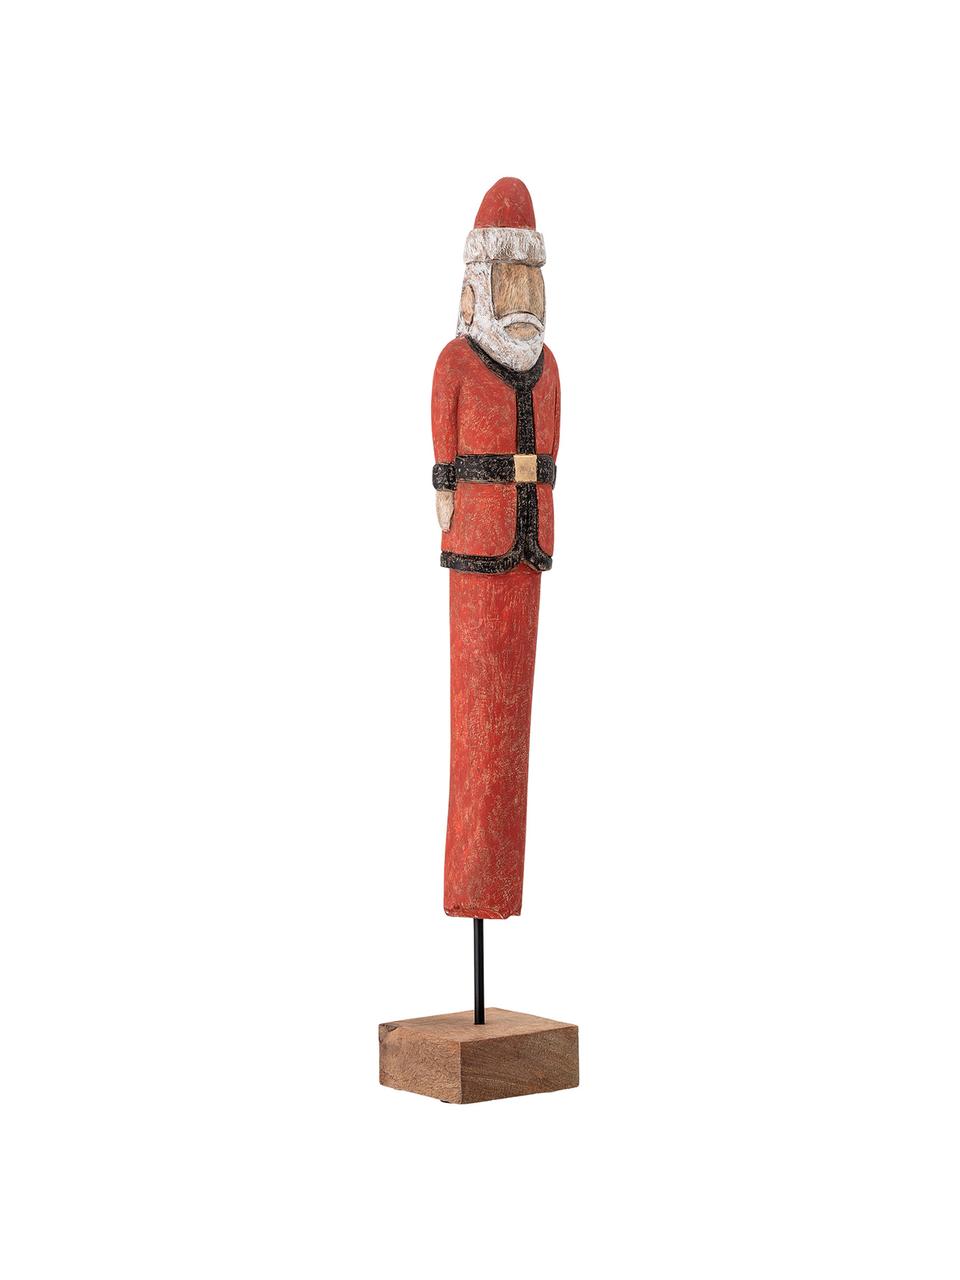 Accessoire décoratif Weihnachtsmann; haut. 56 cm, Bois de manguier, enduit, métal, Rouge, noir, blanc, brun, larg. 10 x haut. 56 cm